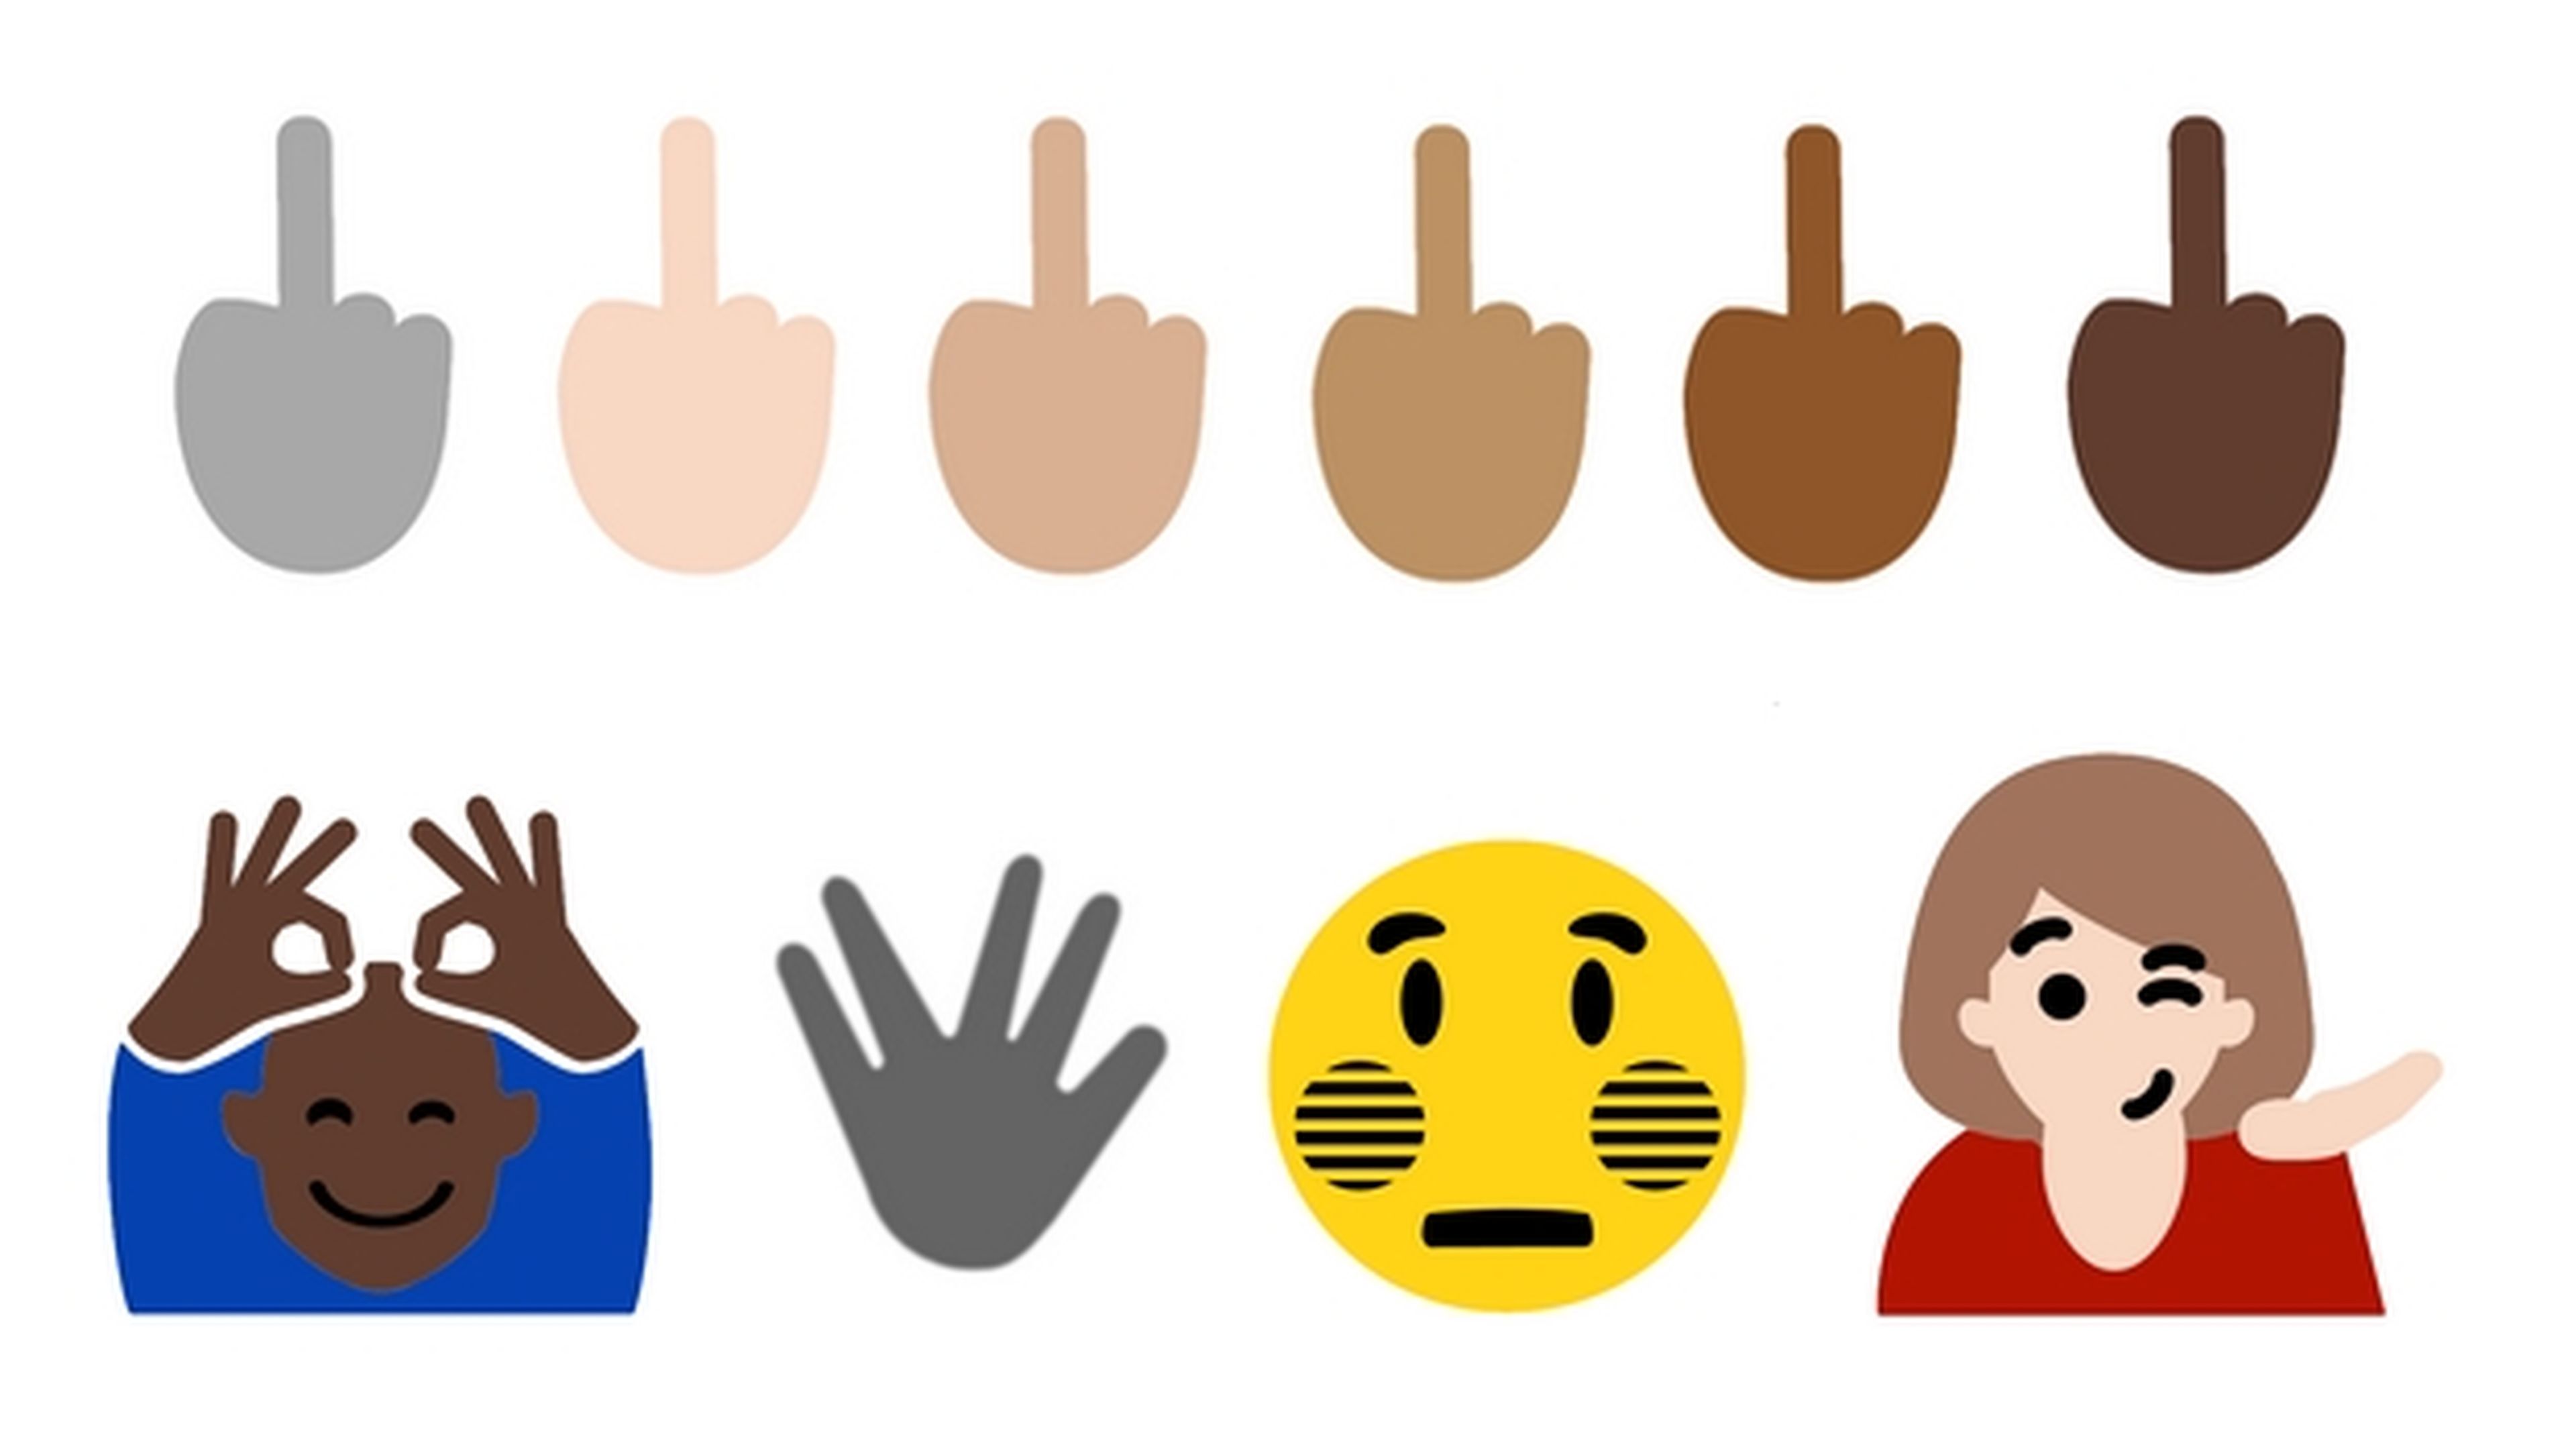 Microsoft incluirá el emoji de La Peineta en Windows 10.